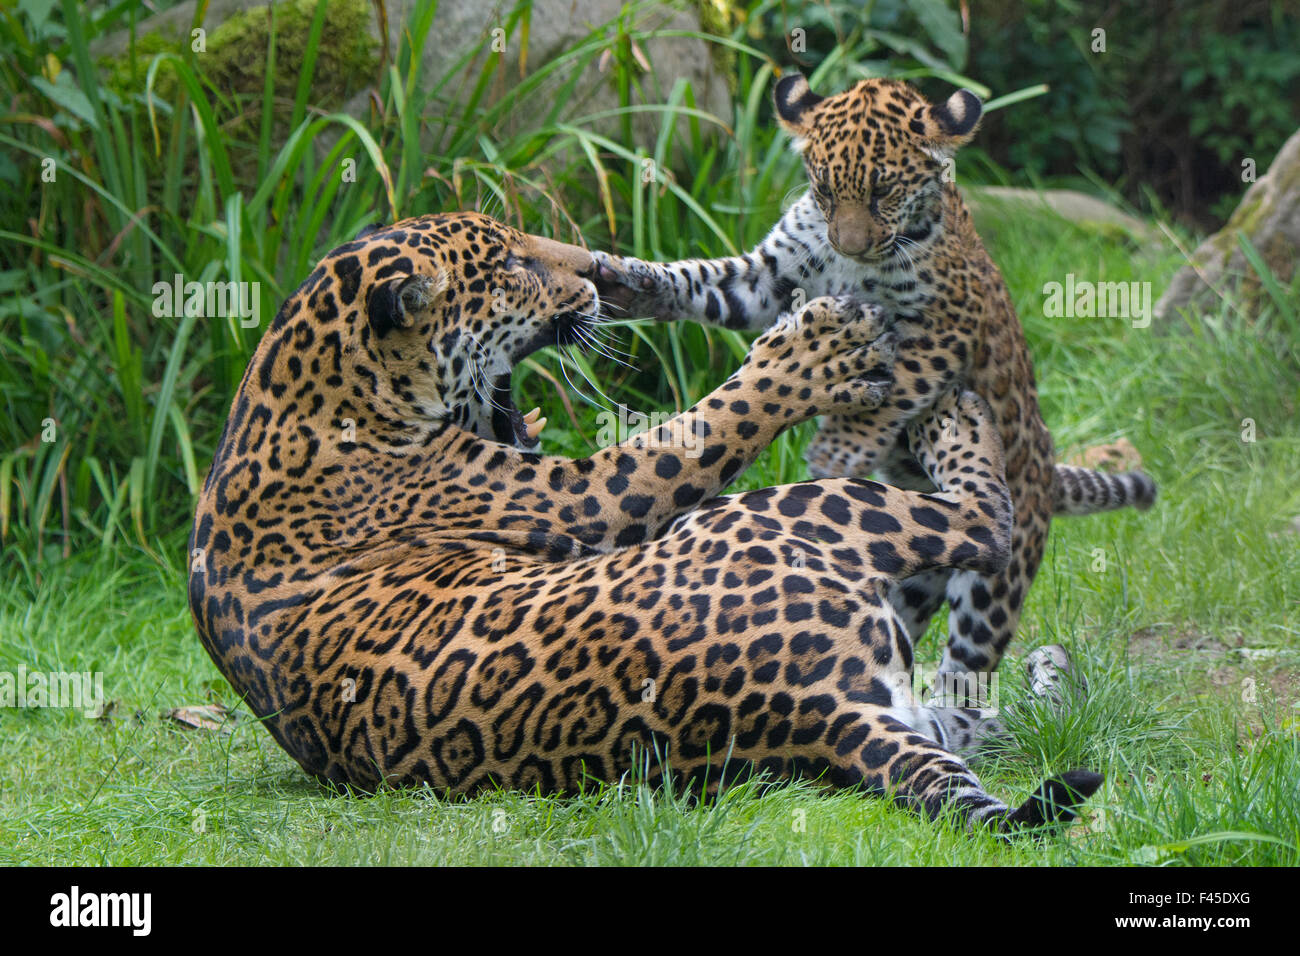 Femme Jaguar (Panthera onca) jouant avec son petit, captive, est présent dans le sud et l'Amérique centrale. Banque D'Images